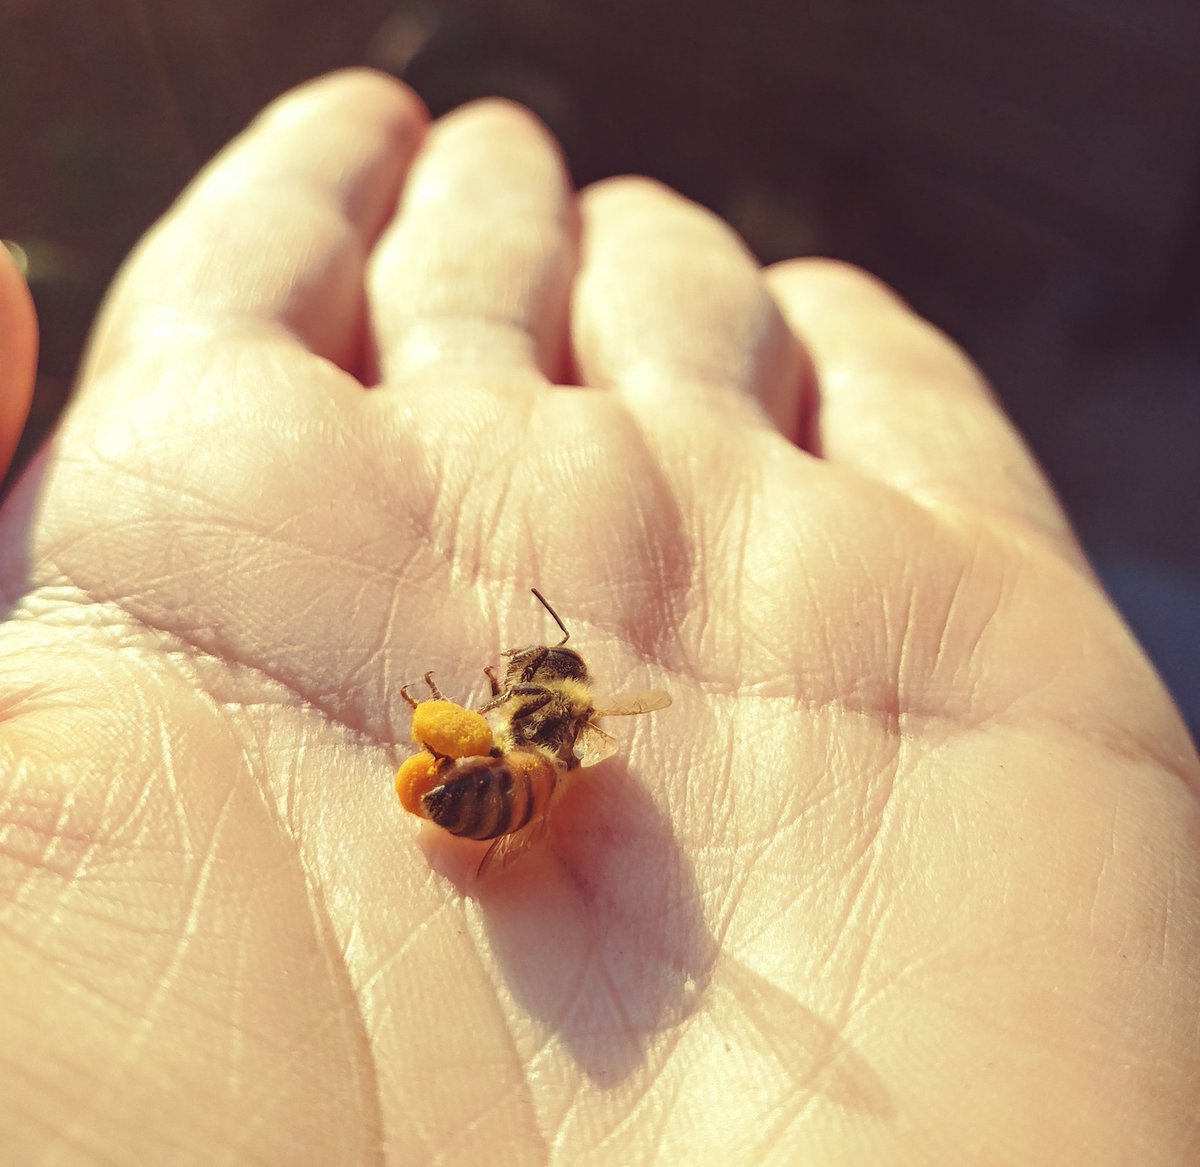 深大寺養蜂園 はちみつ 生ローヤルゼリー通販しています プレゼントにもぜひ ご覧ください ミツバチの脚についた花粉だんご ビーポーレン とも言いますね 人間でいうとスイカ２つを抱えて飛ぶイメージの重さがあります 巣の近くで息絶えてまし